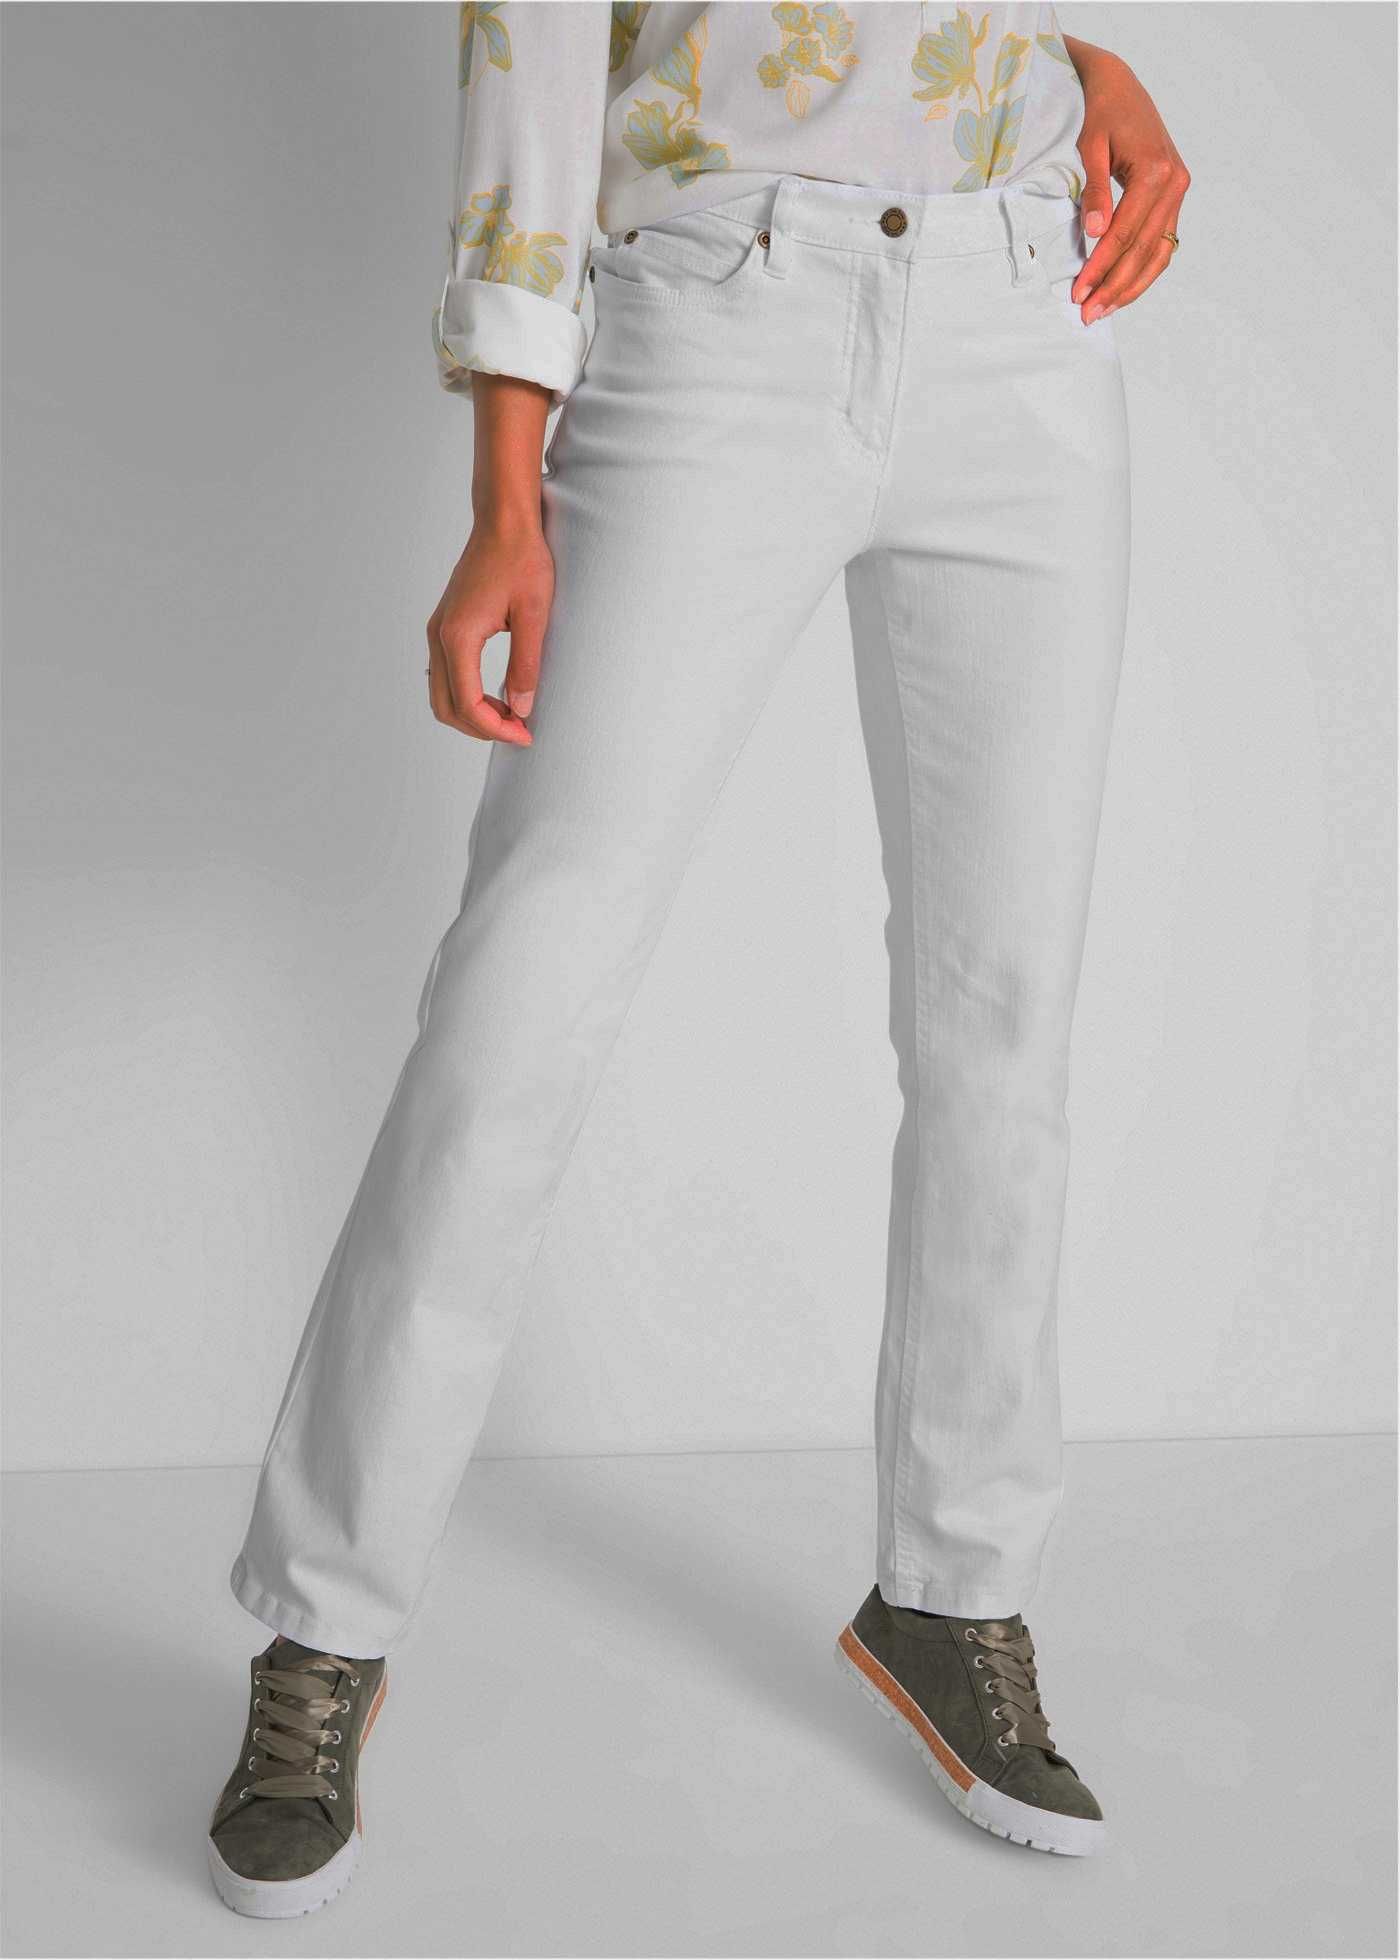 Jeans białe stretch Bawełna R-54 na niskich